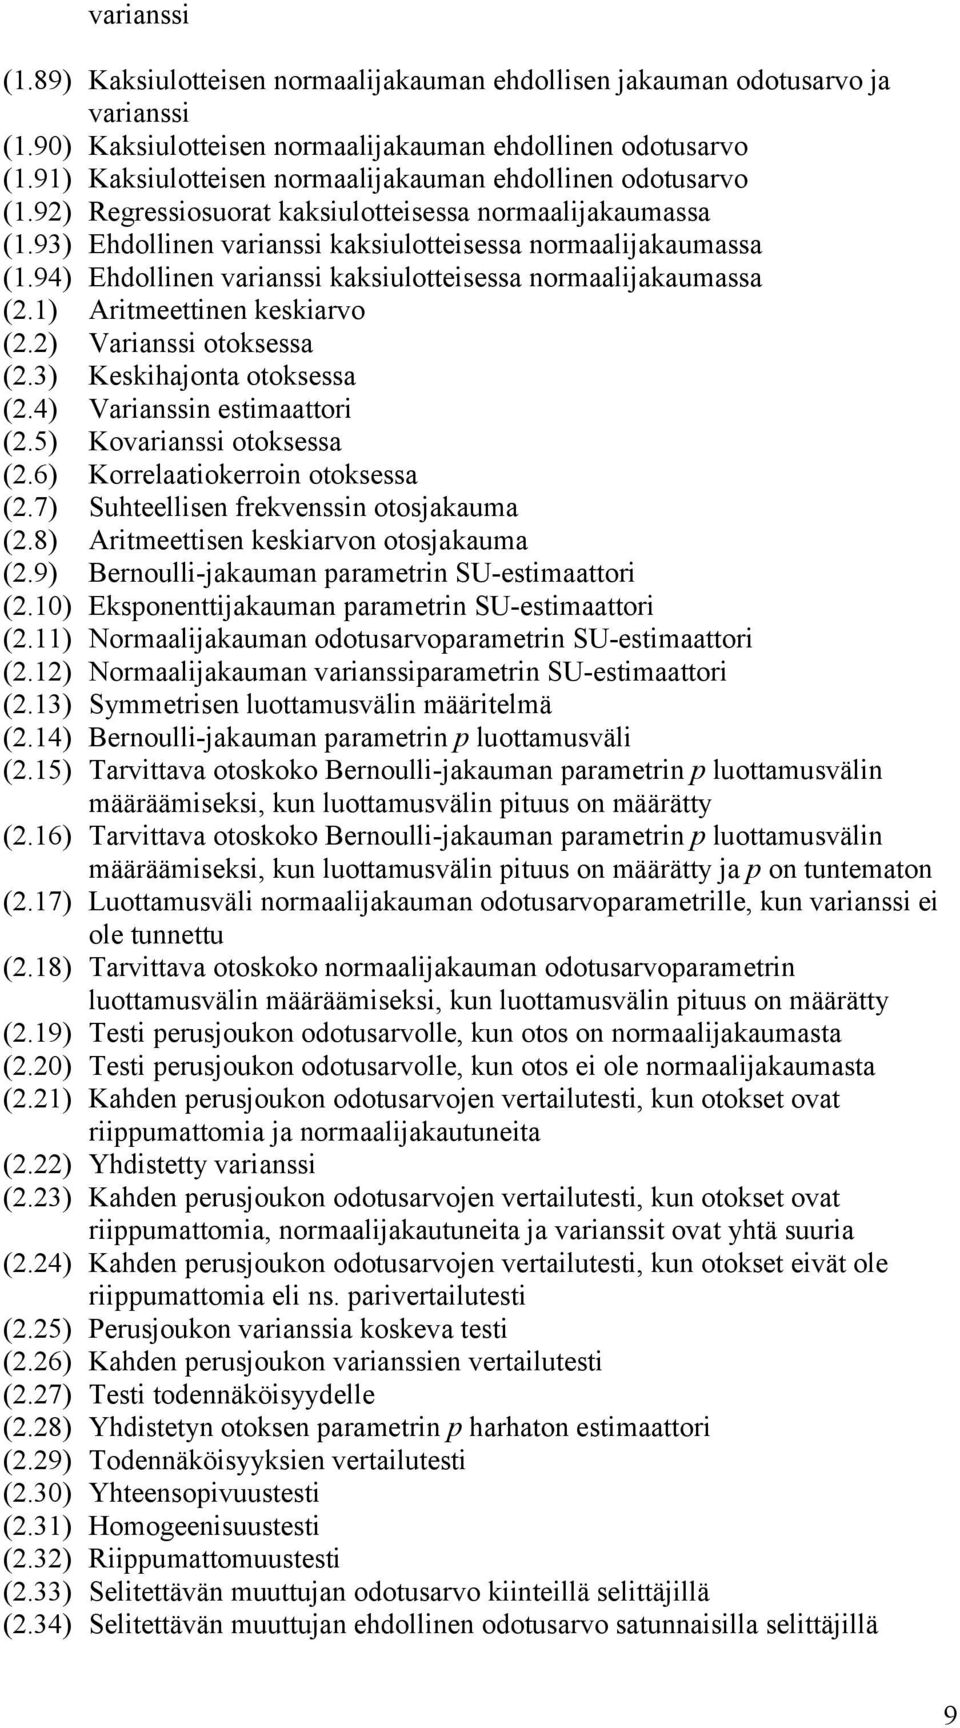 ) Varass otoksessa (.3) Keskhajota otoksessa (.4) Varass estmaattor (.5) Kovarass otoksessa (.6) Korrelaatokerro otoksessa (.7) Suhteellse frekvess otosjakauma (.8) Artmeettse keskarvo otosjakauma (.